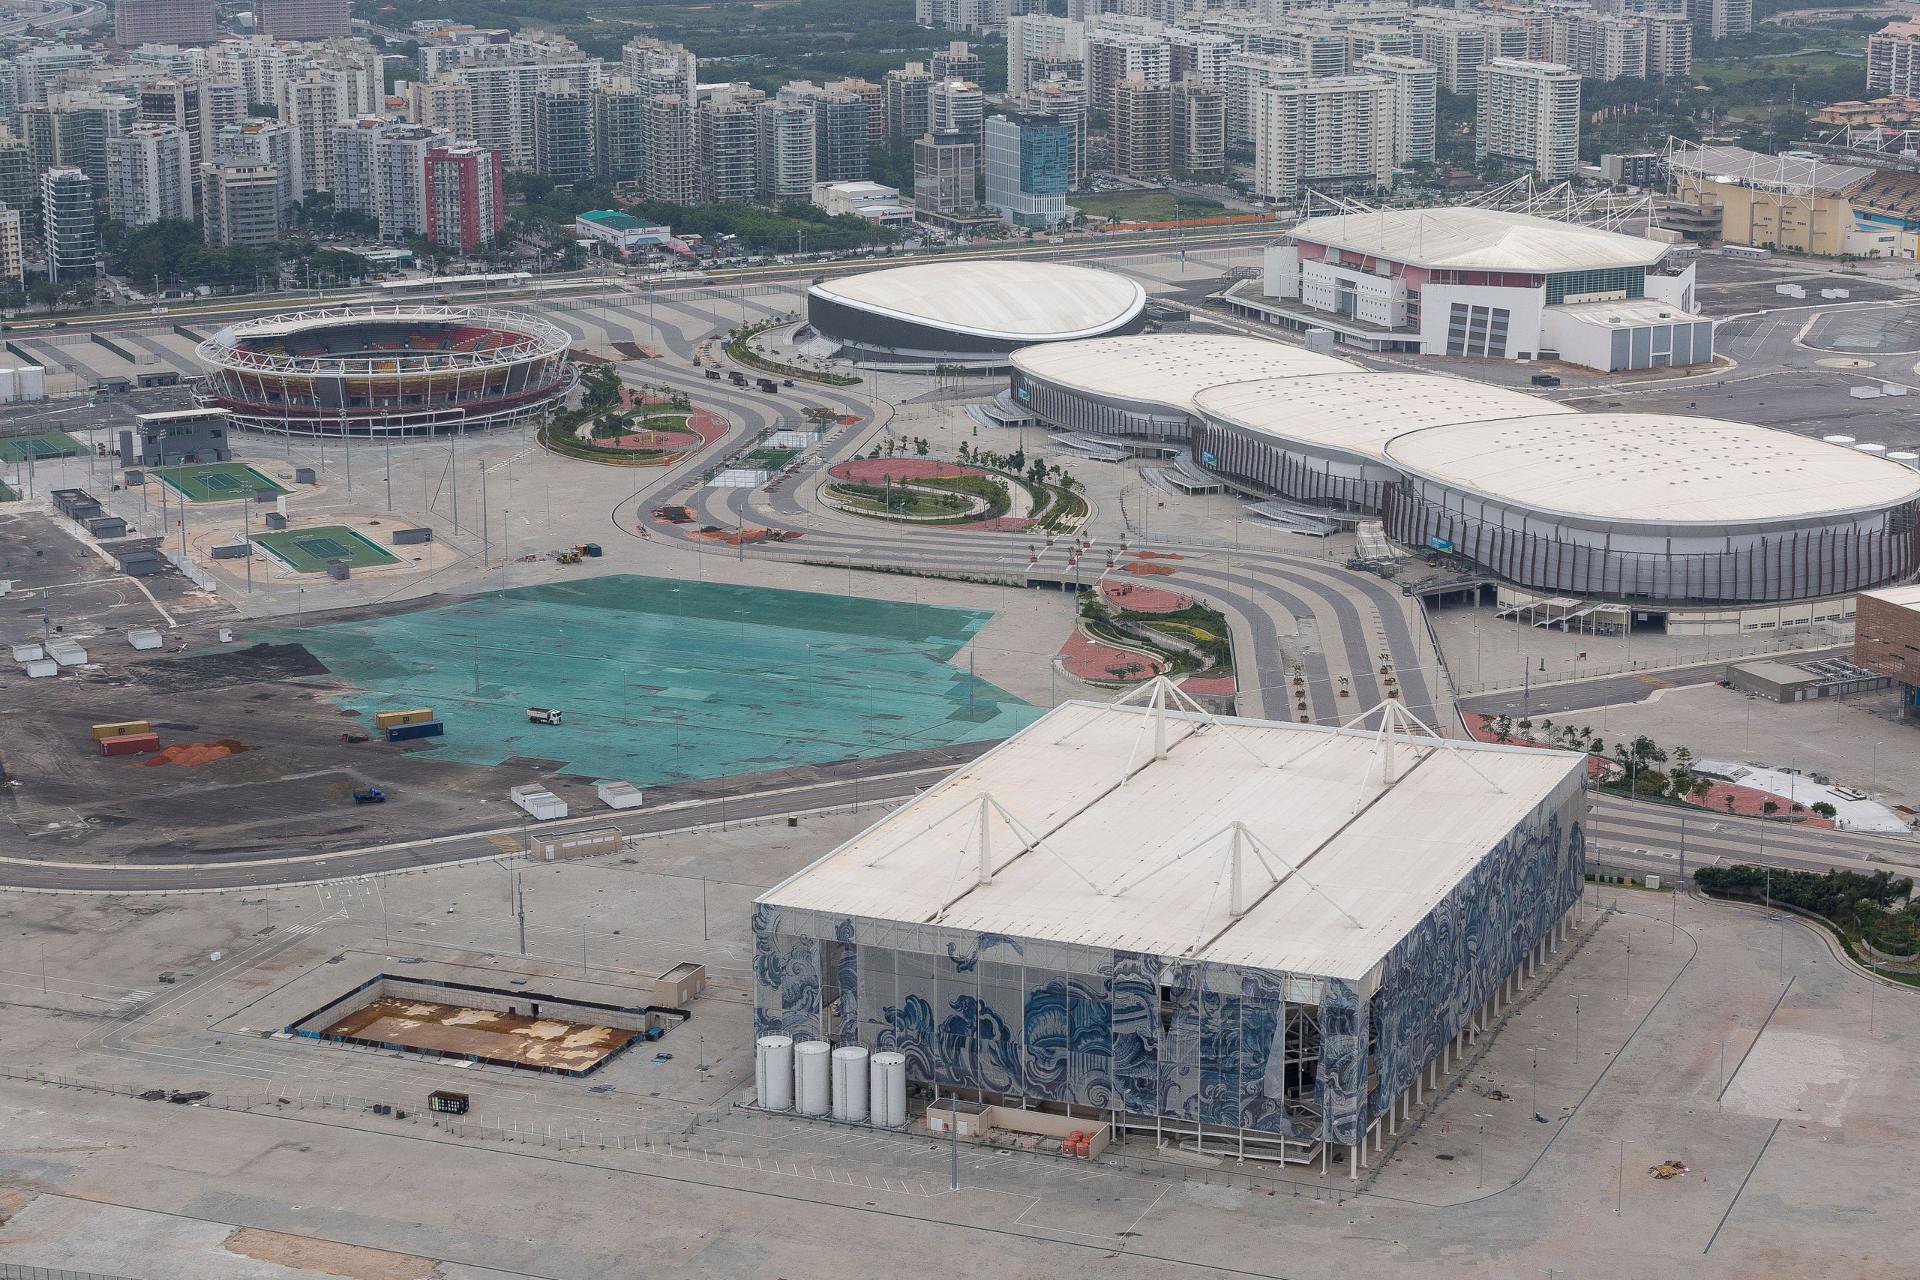 Vista aérea da Cidade Olímpica, no Rio de Janeiro, com estádios e arenas multiuso